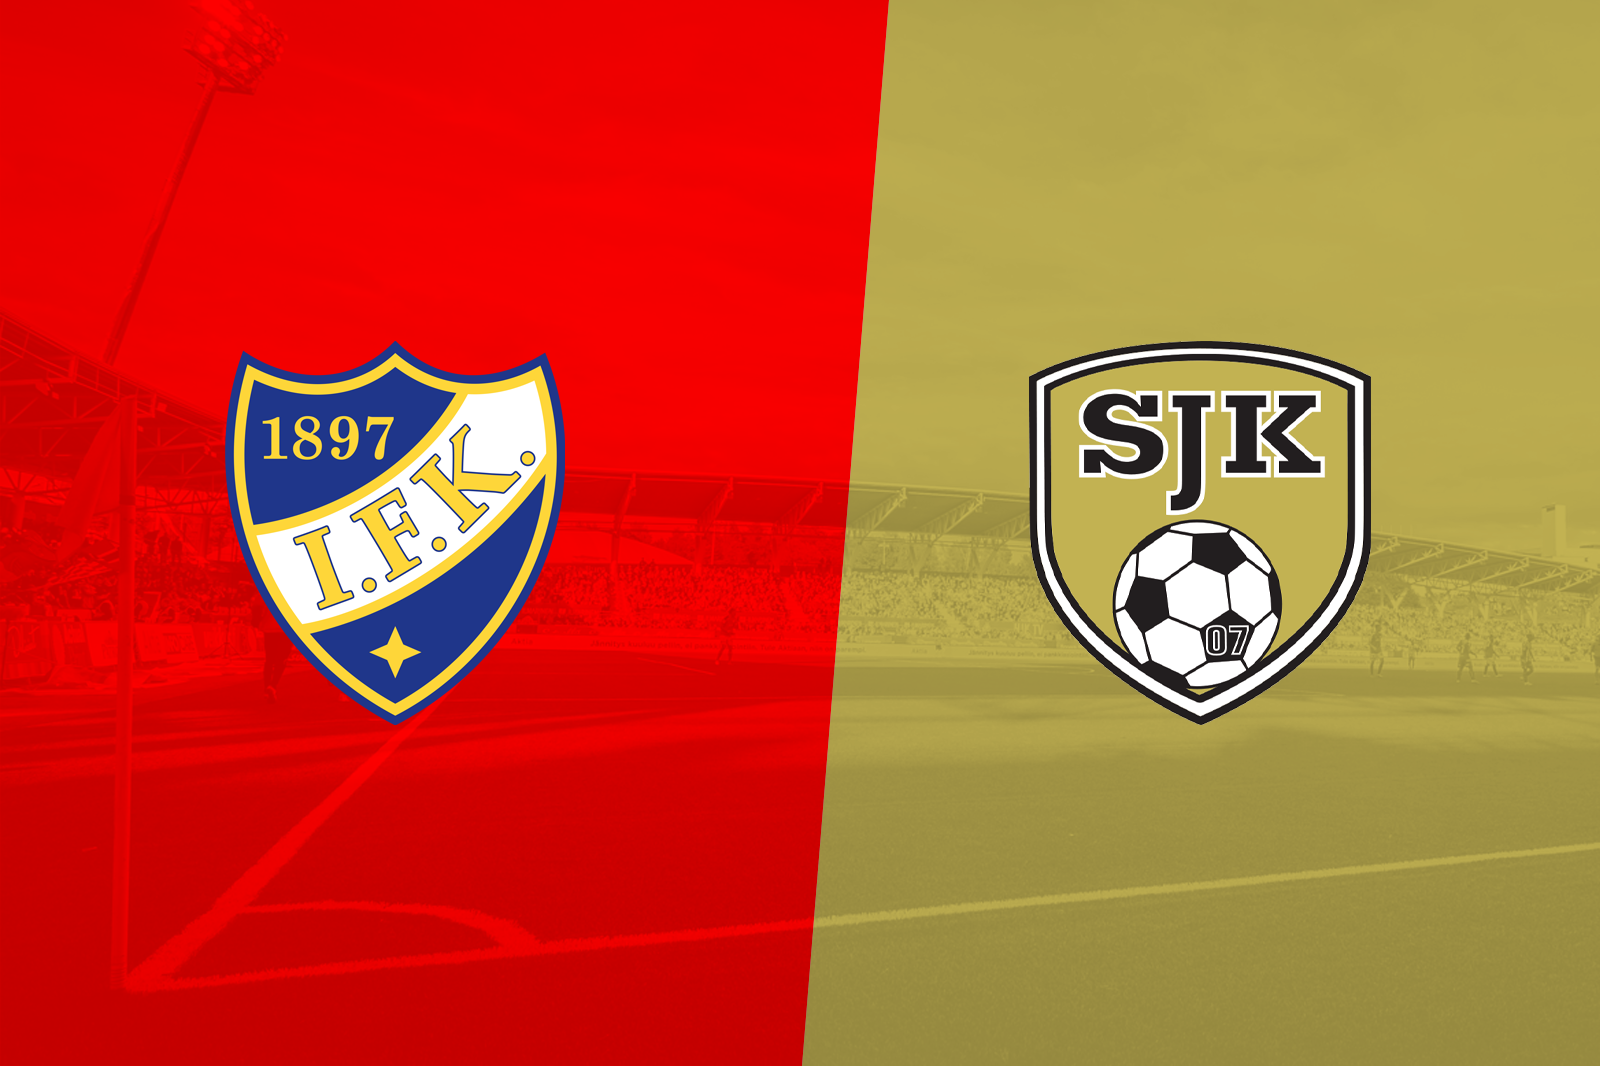 Inför matchen: HIFK möter SJK hemma imorgon